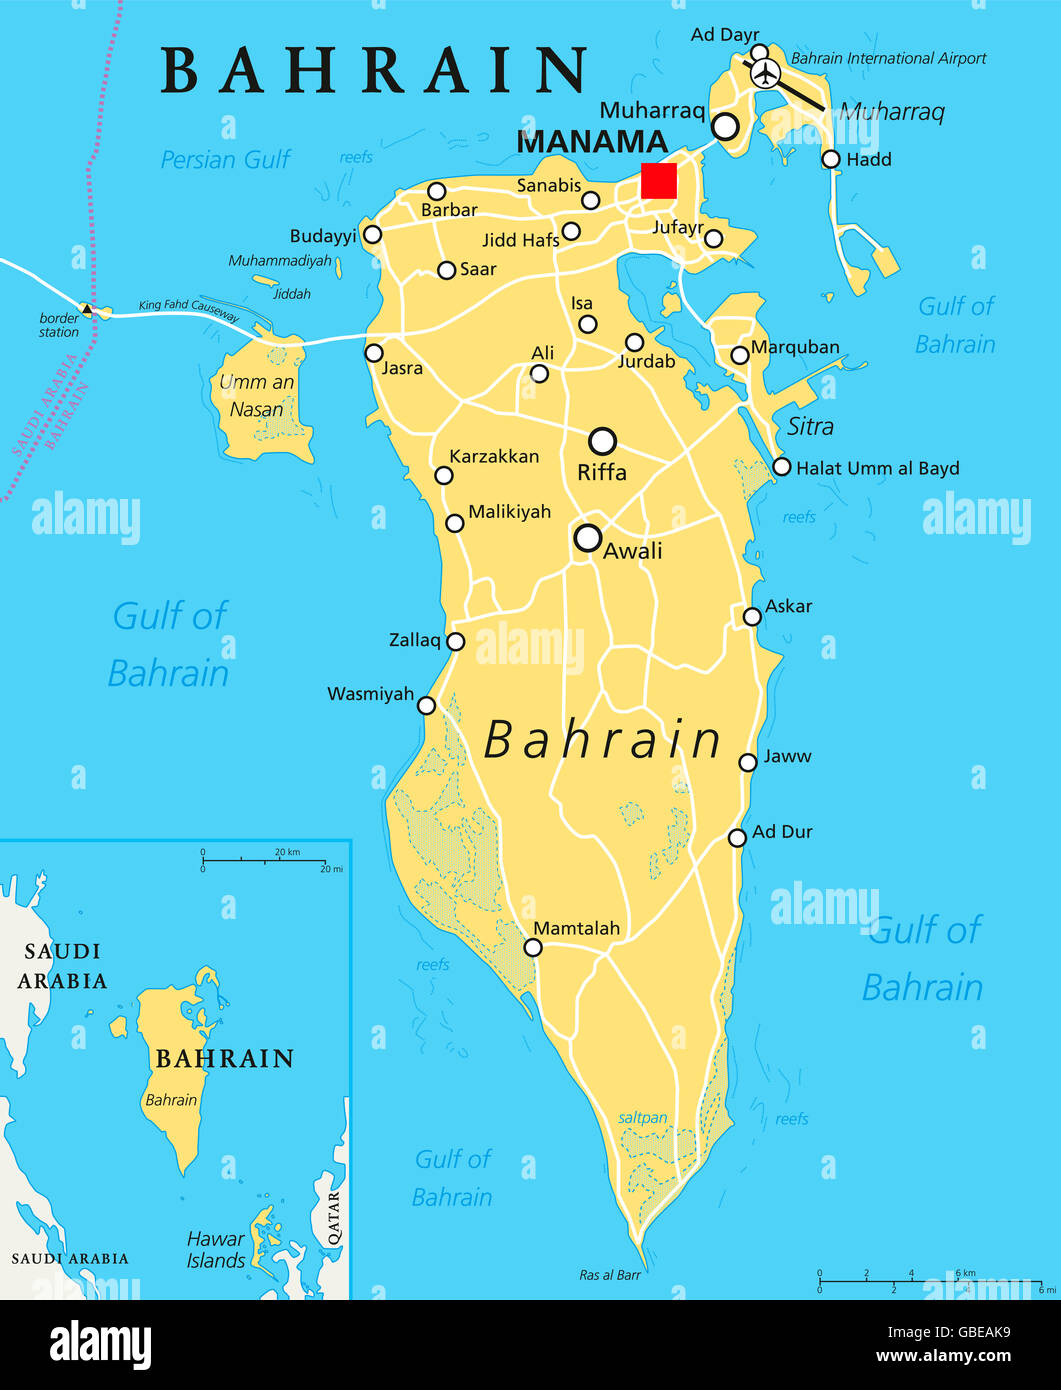 Bahrein mapa político con la capital, Manama. País de la isla, el archipiélago y el Reino cerca de la orilla occidental del Golfo Pérsico. Foto de stock